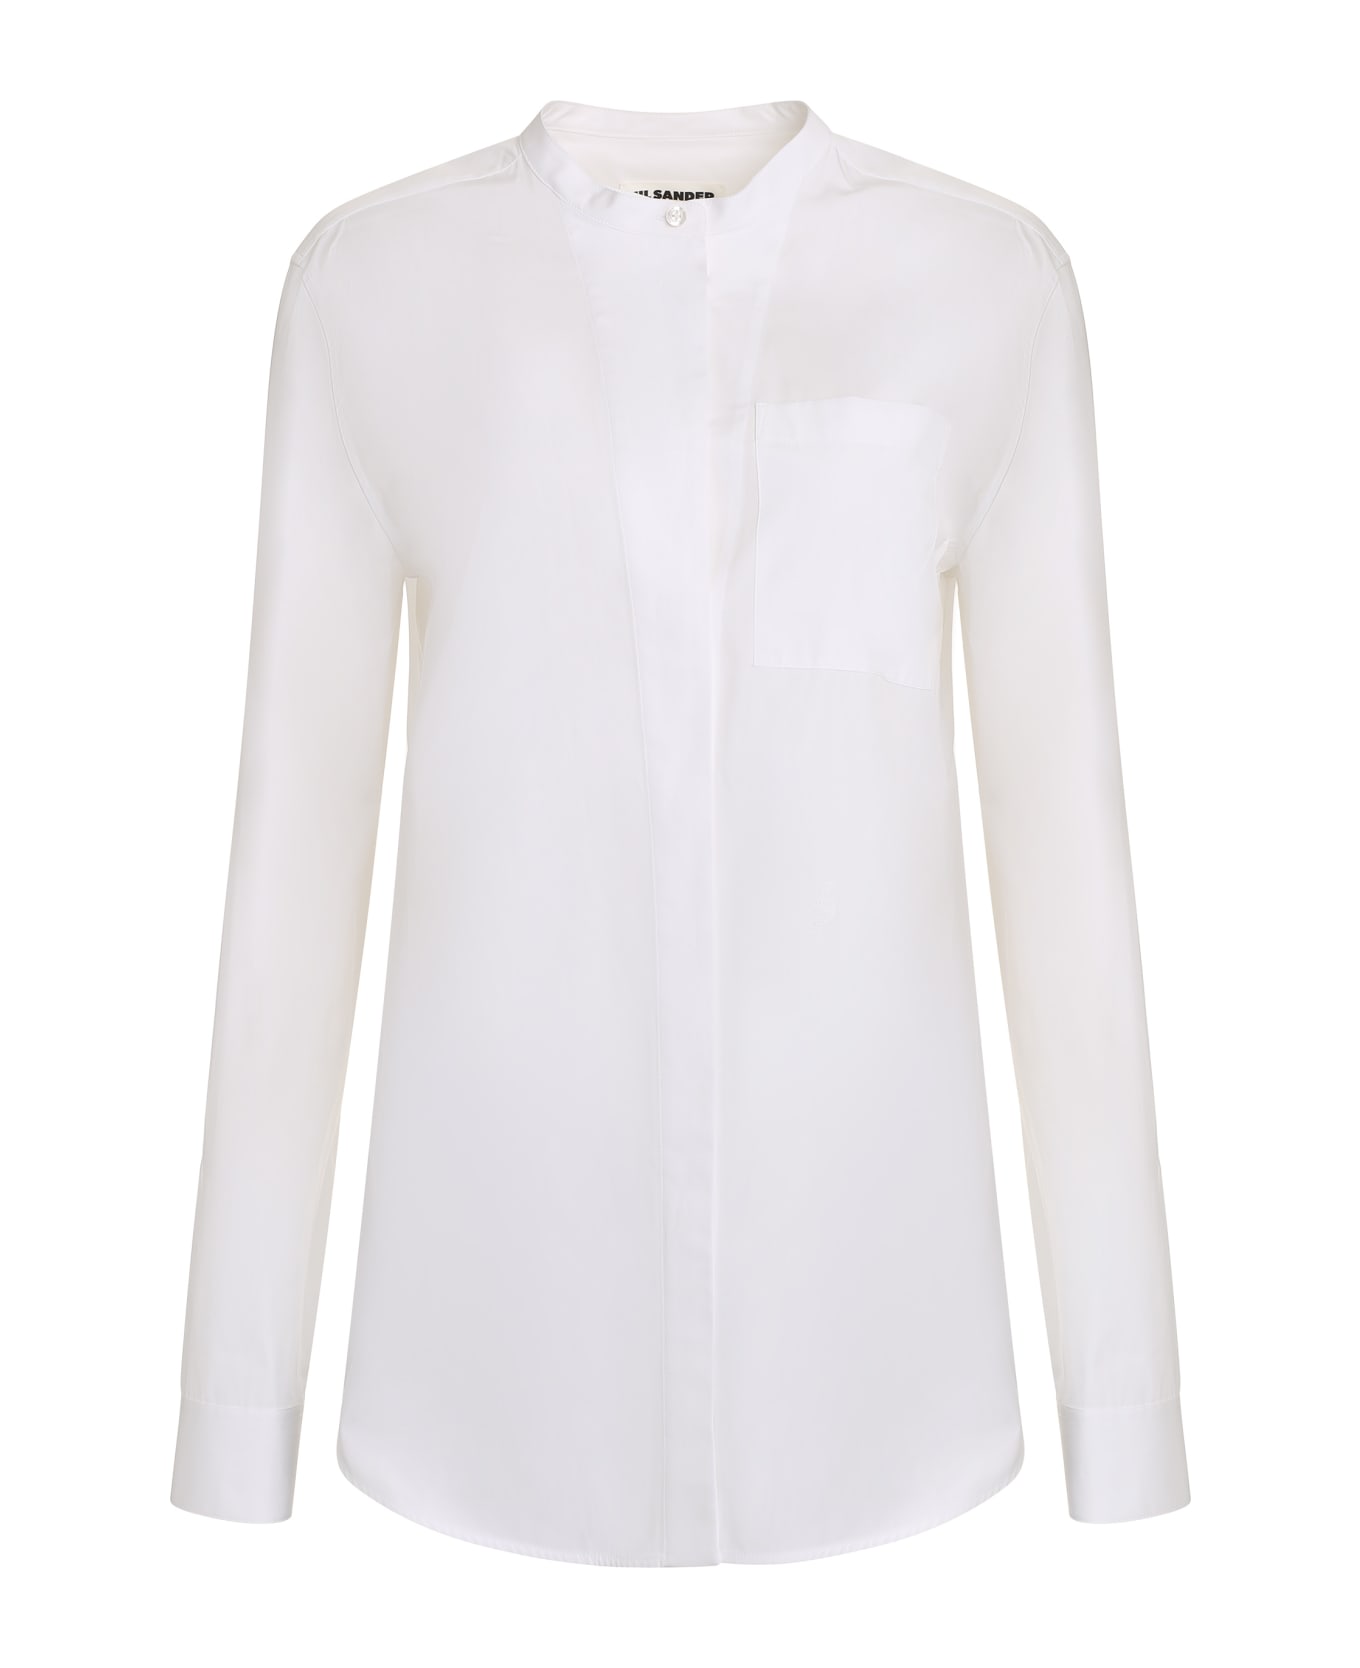 Jil Sander Cotton Shirt - White シャツ